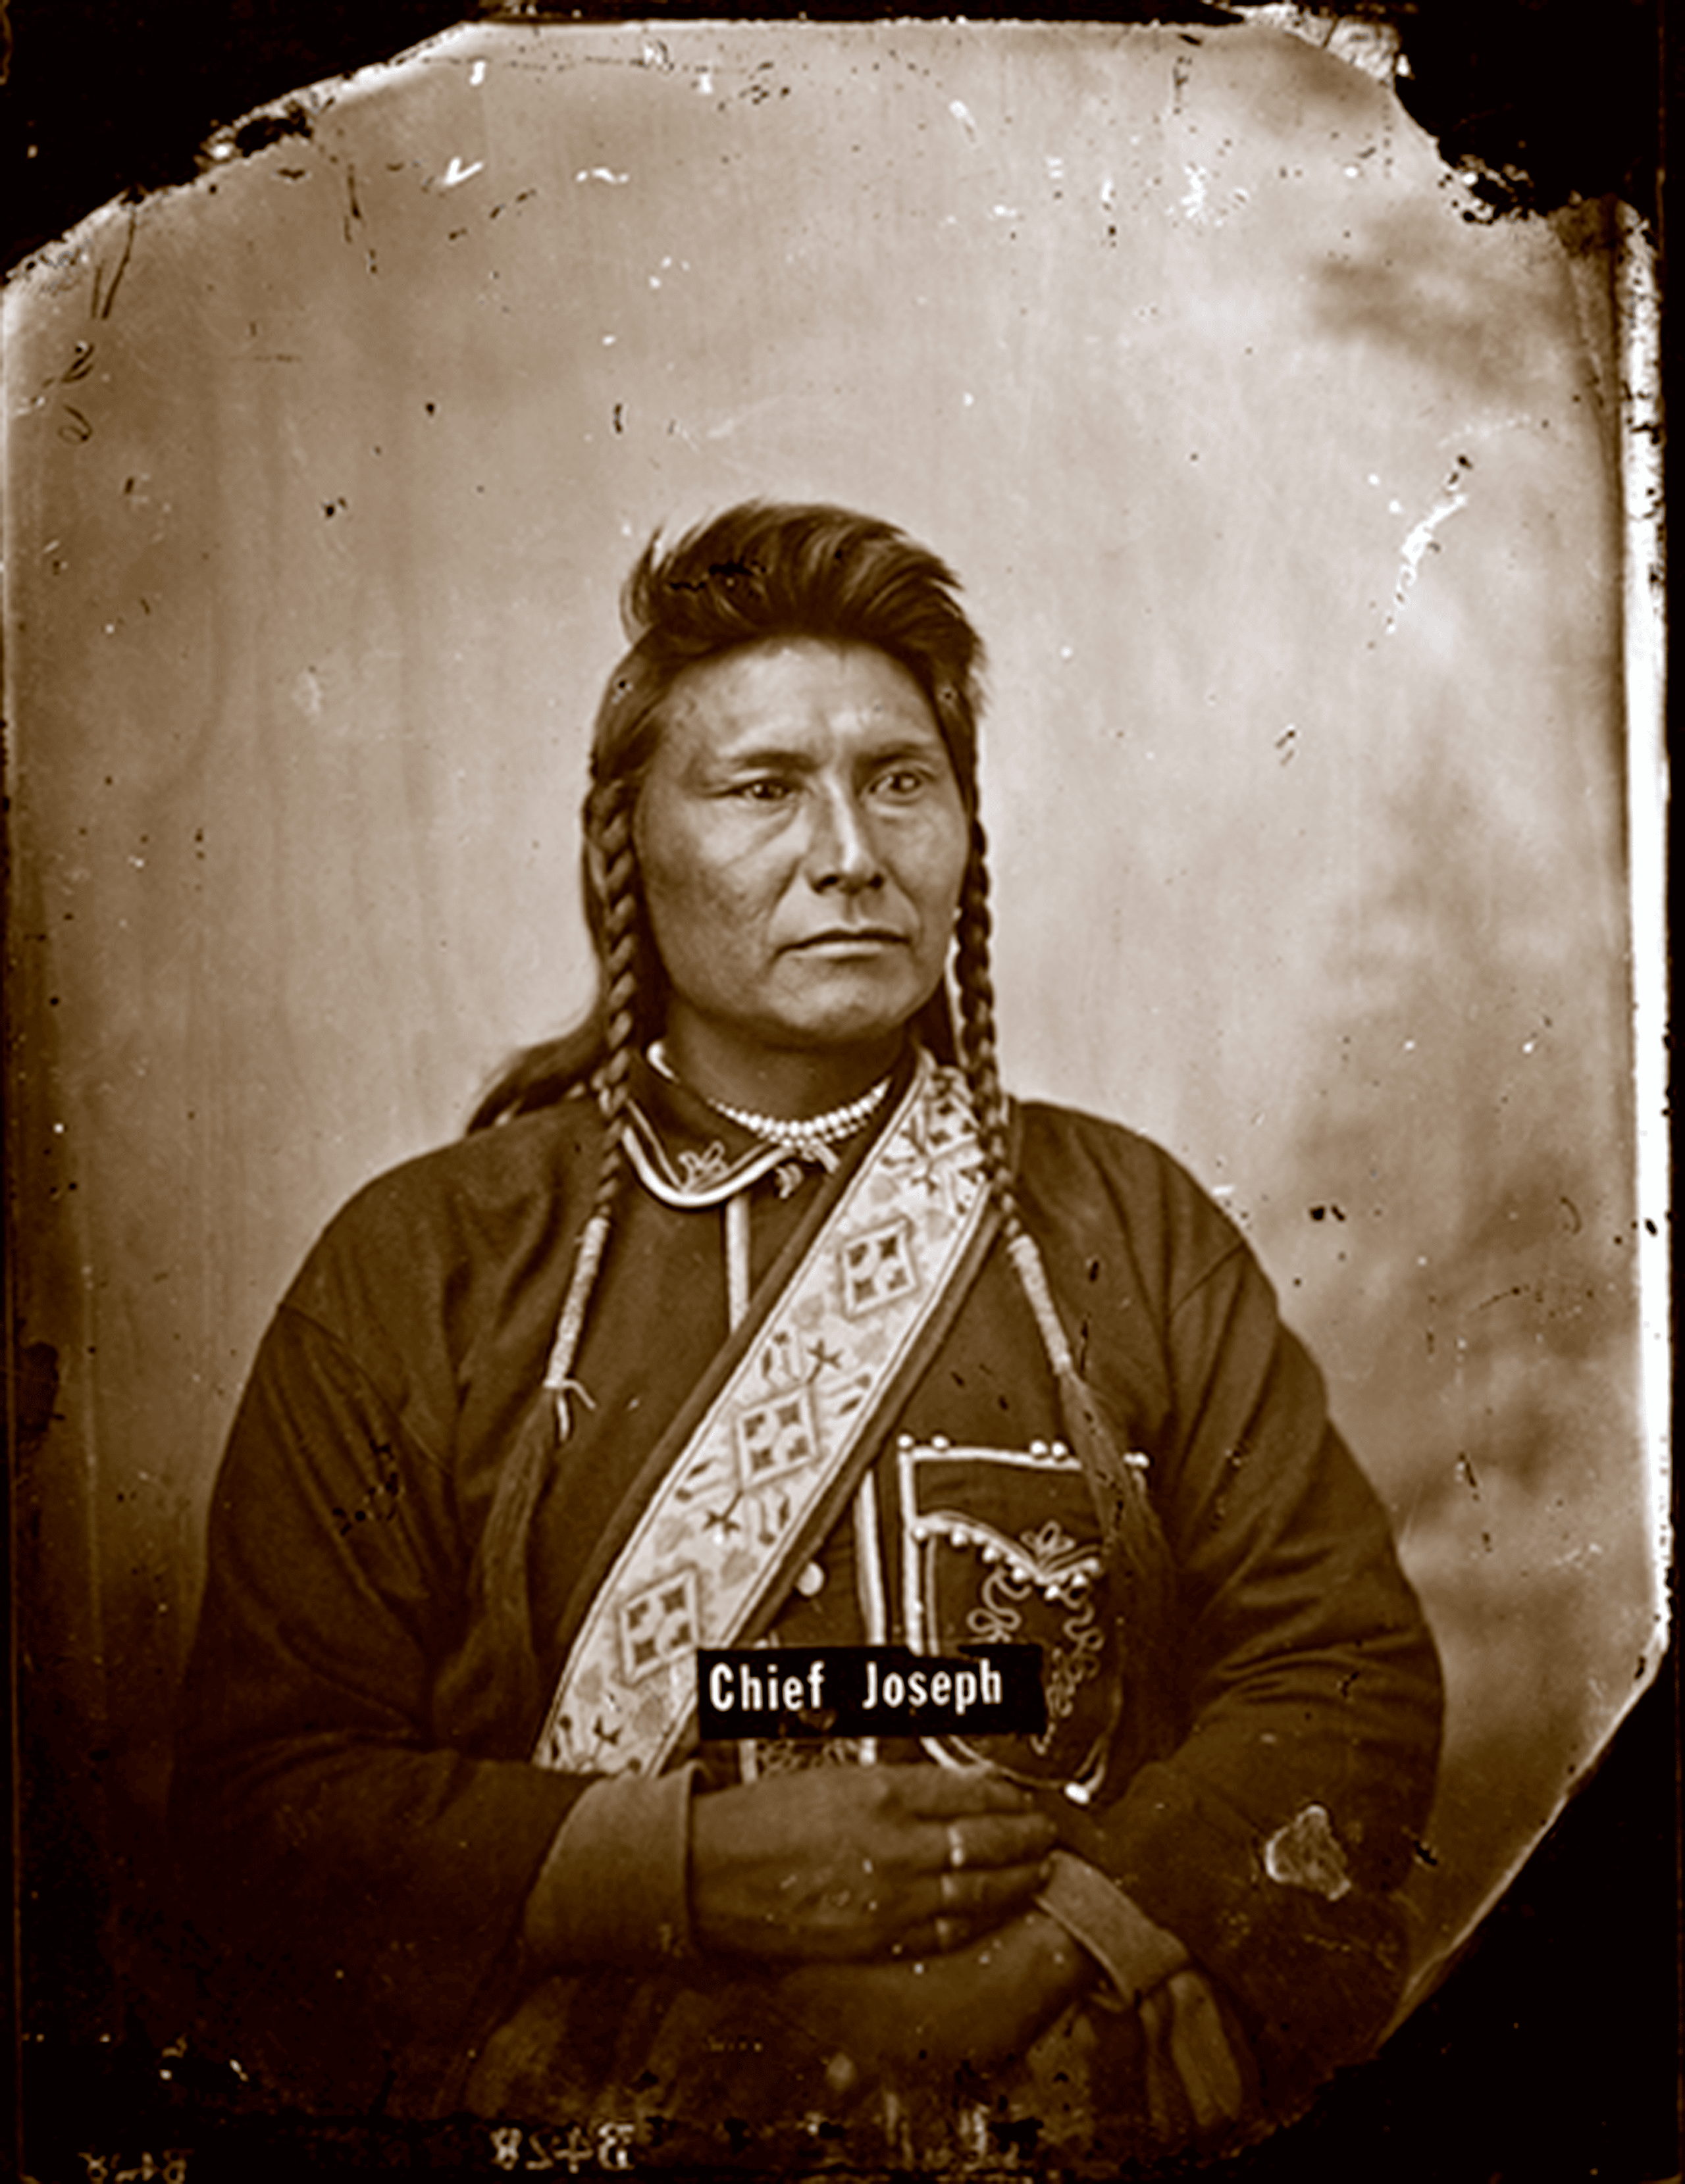 Chief Joseph by Orlando Scott Goff, 1877 Bismarck, Dakota Territory